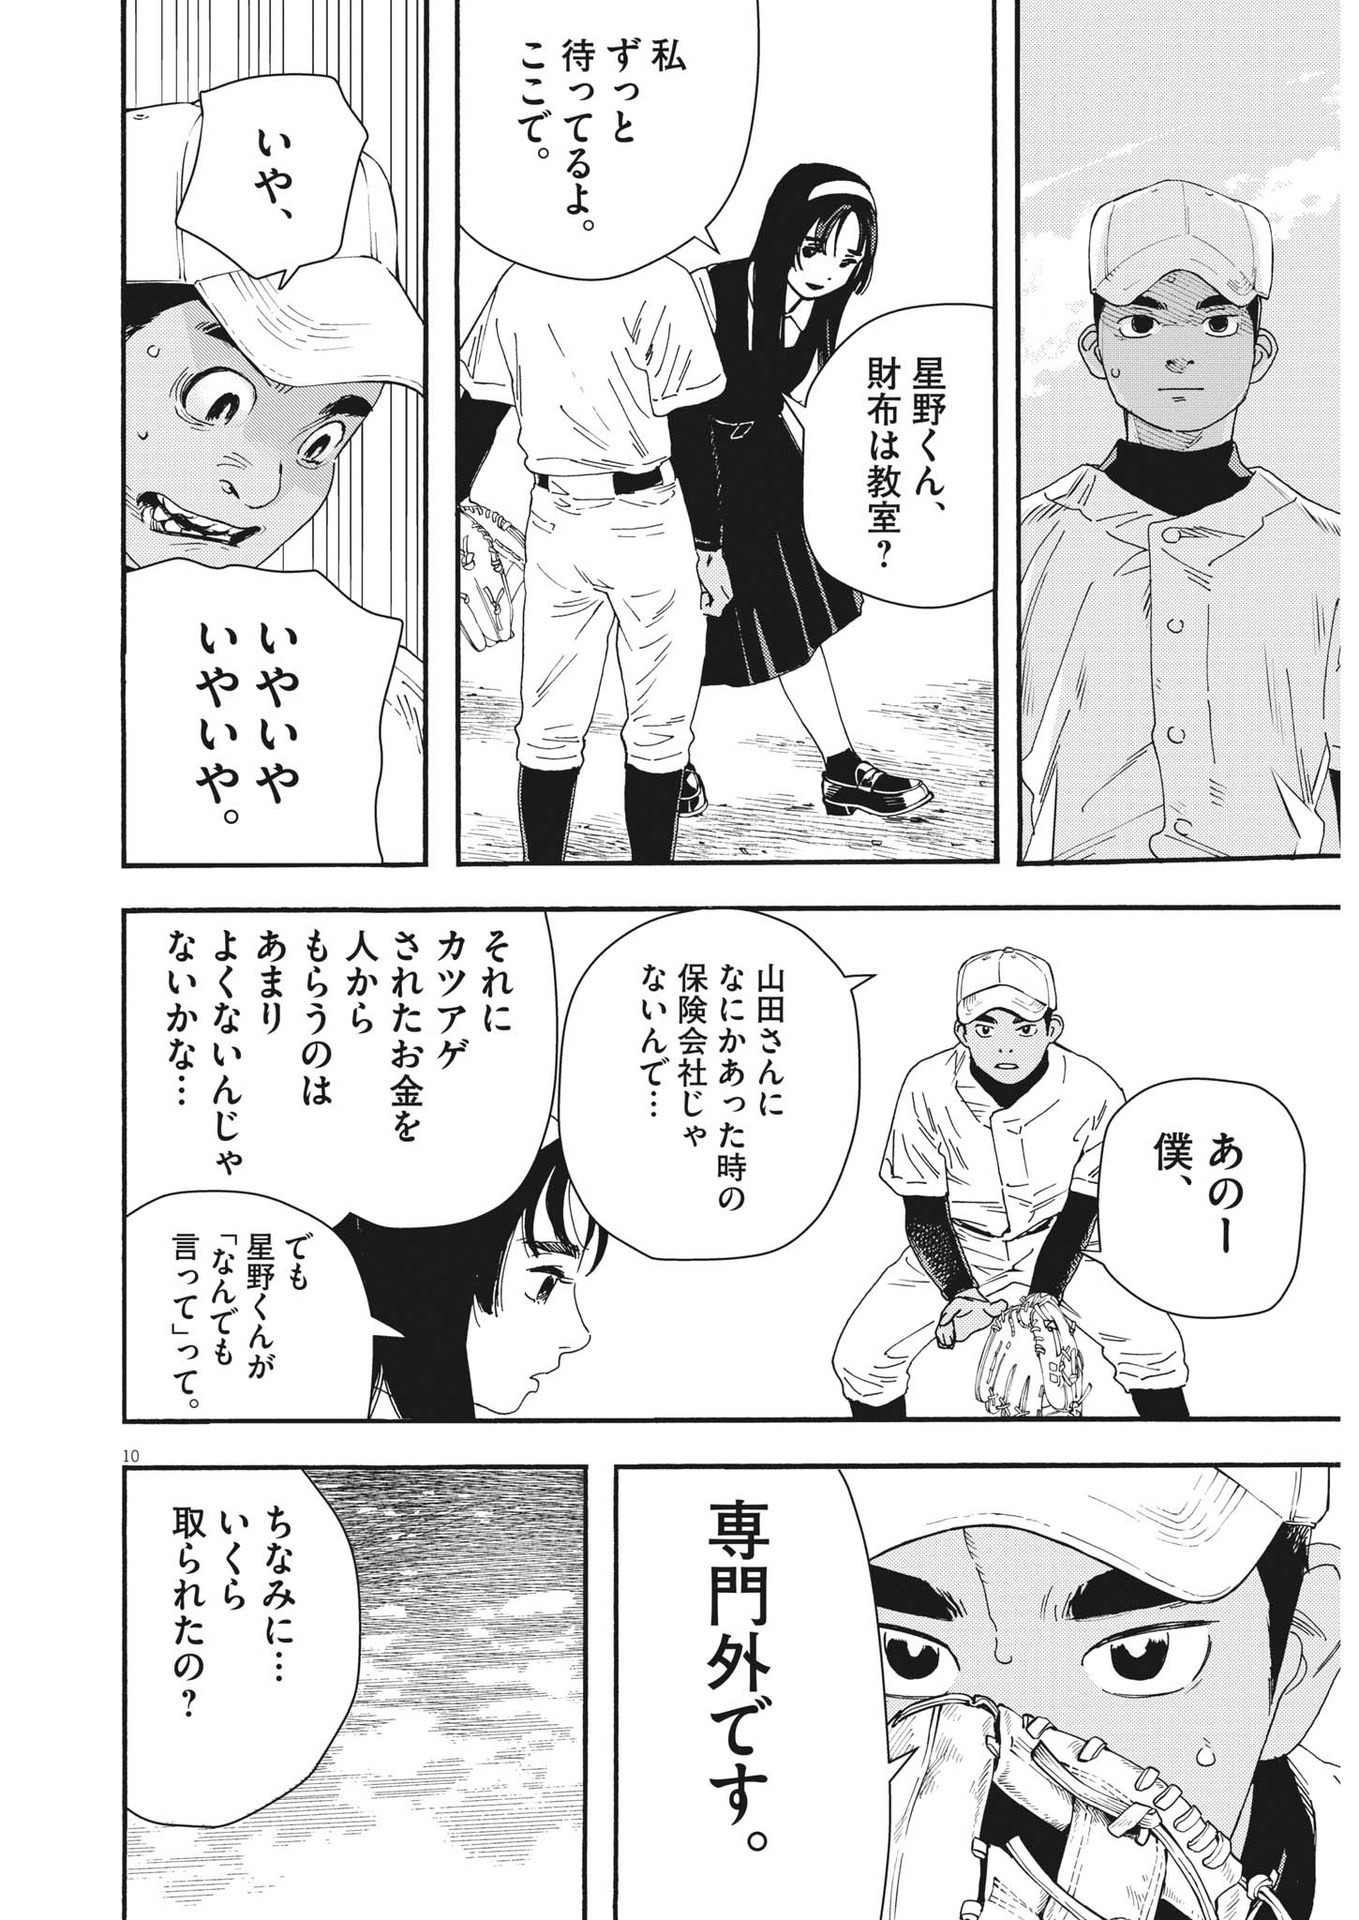 Hoshino-kun, Shitagatte! - Chapter 1 - Page 10